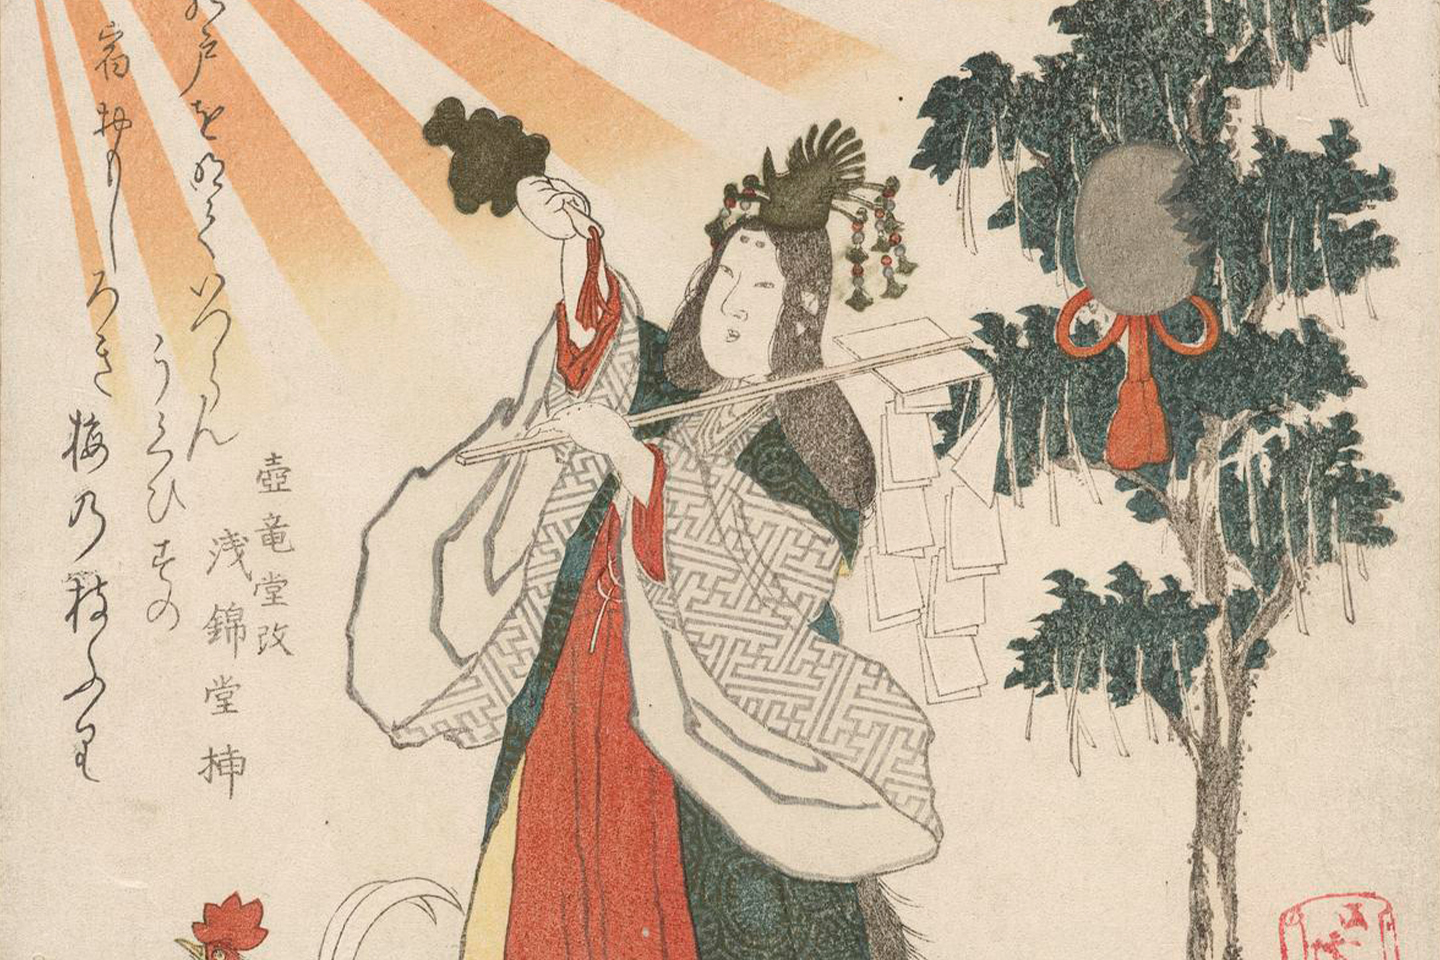 Amaterasu, the Japanese Sun Goddess